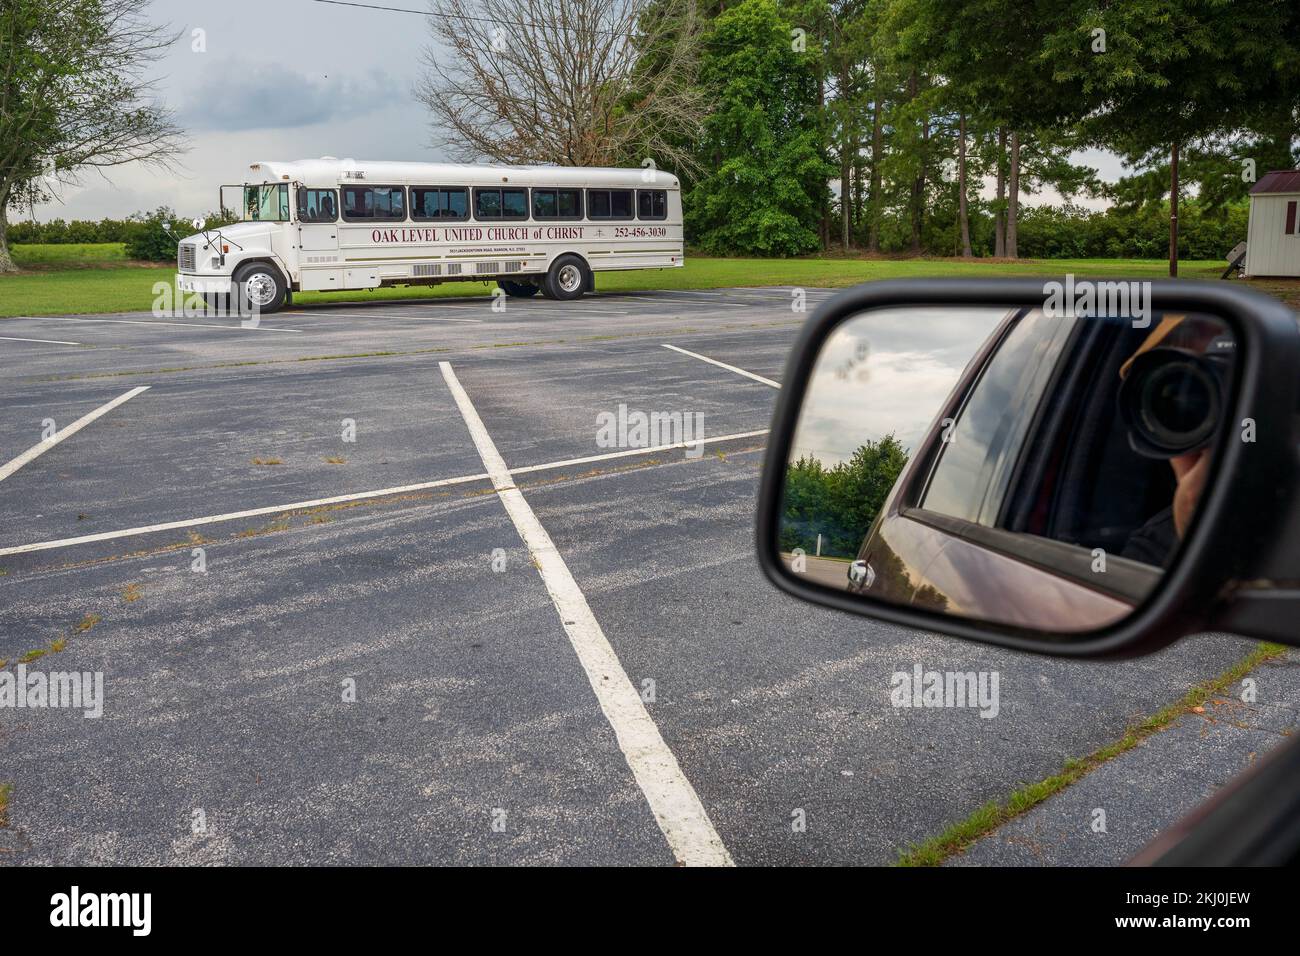 Le photographe prend une photo d'un bus d'église américain blanc de sa voiture dans un parking Banque D'Images